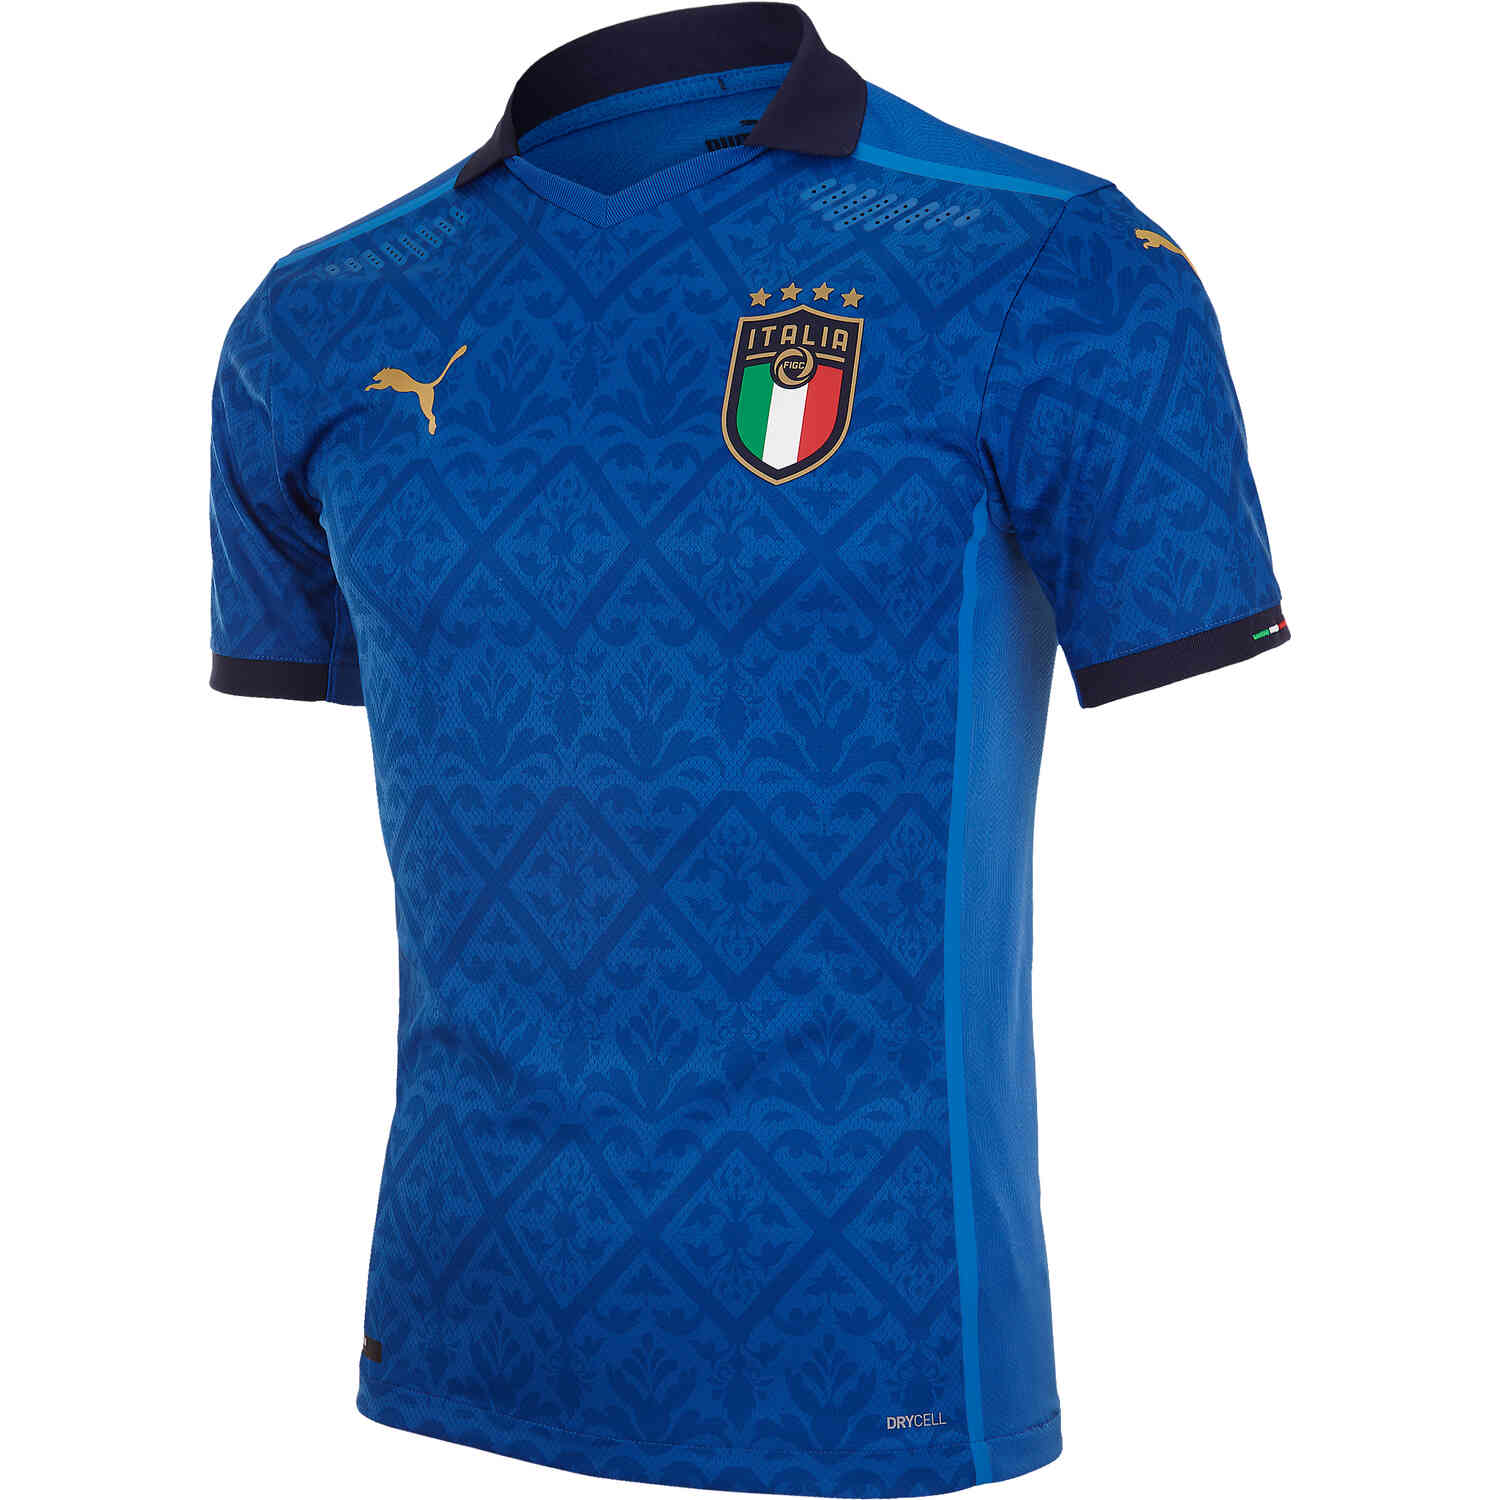 Italy Jersey Puma Italy 2020 Away Jersey Futfanatics / More about